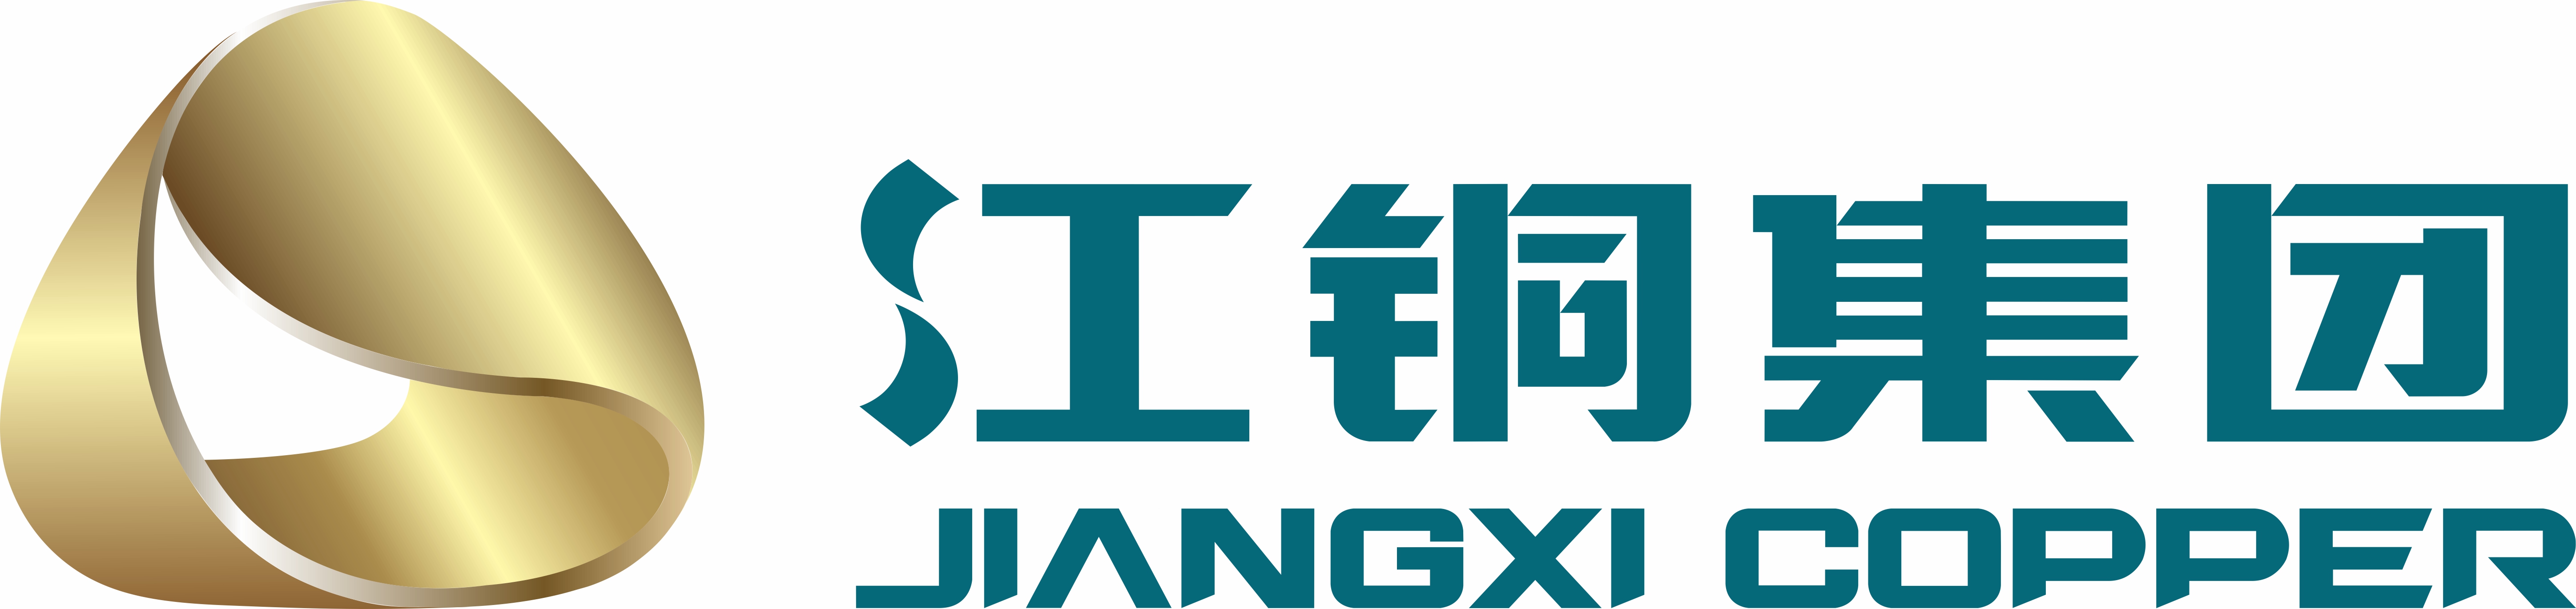 Jiangxi Copper Brand Logo